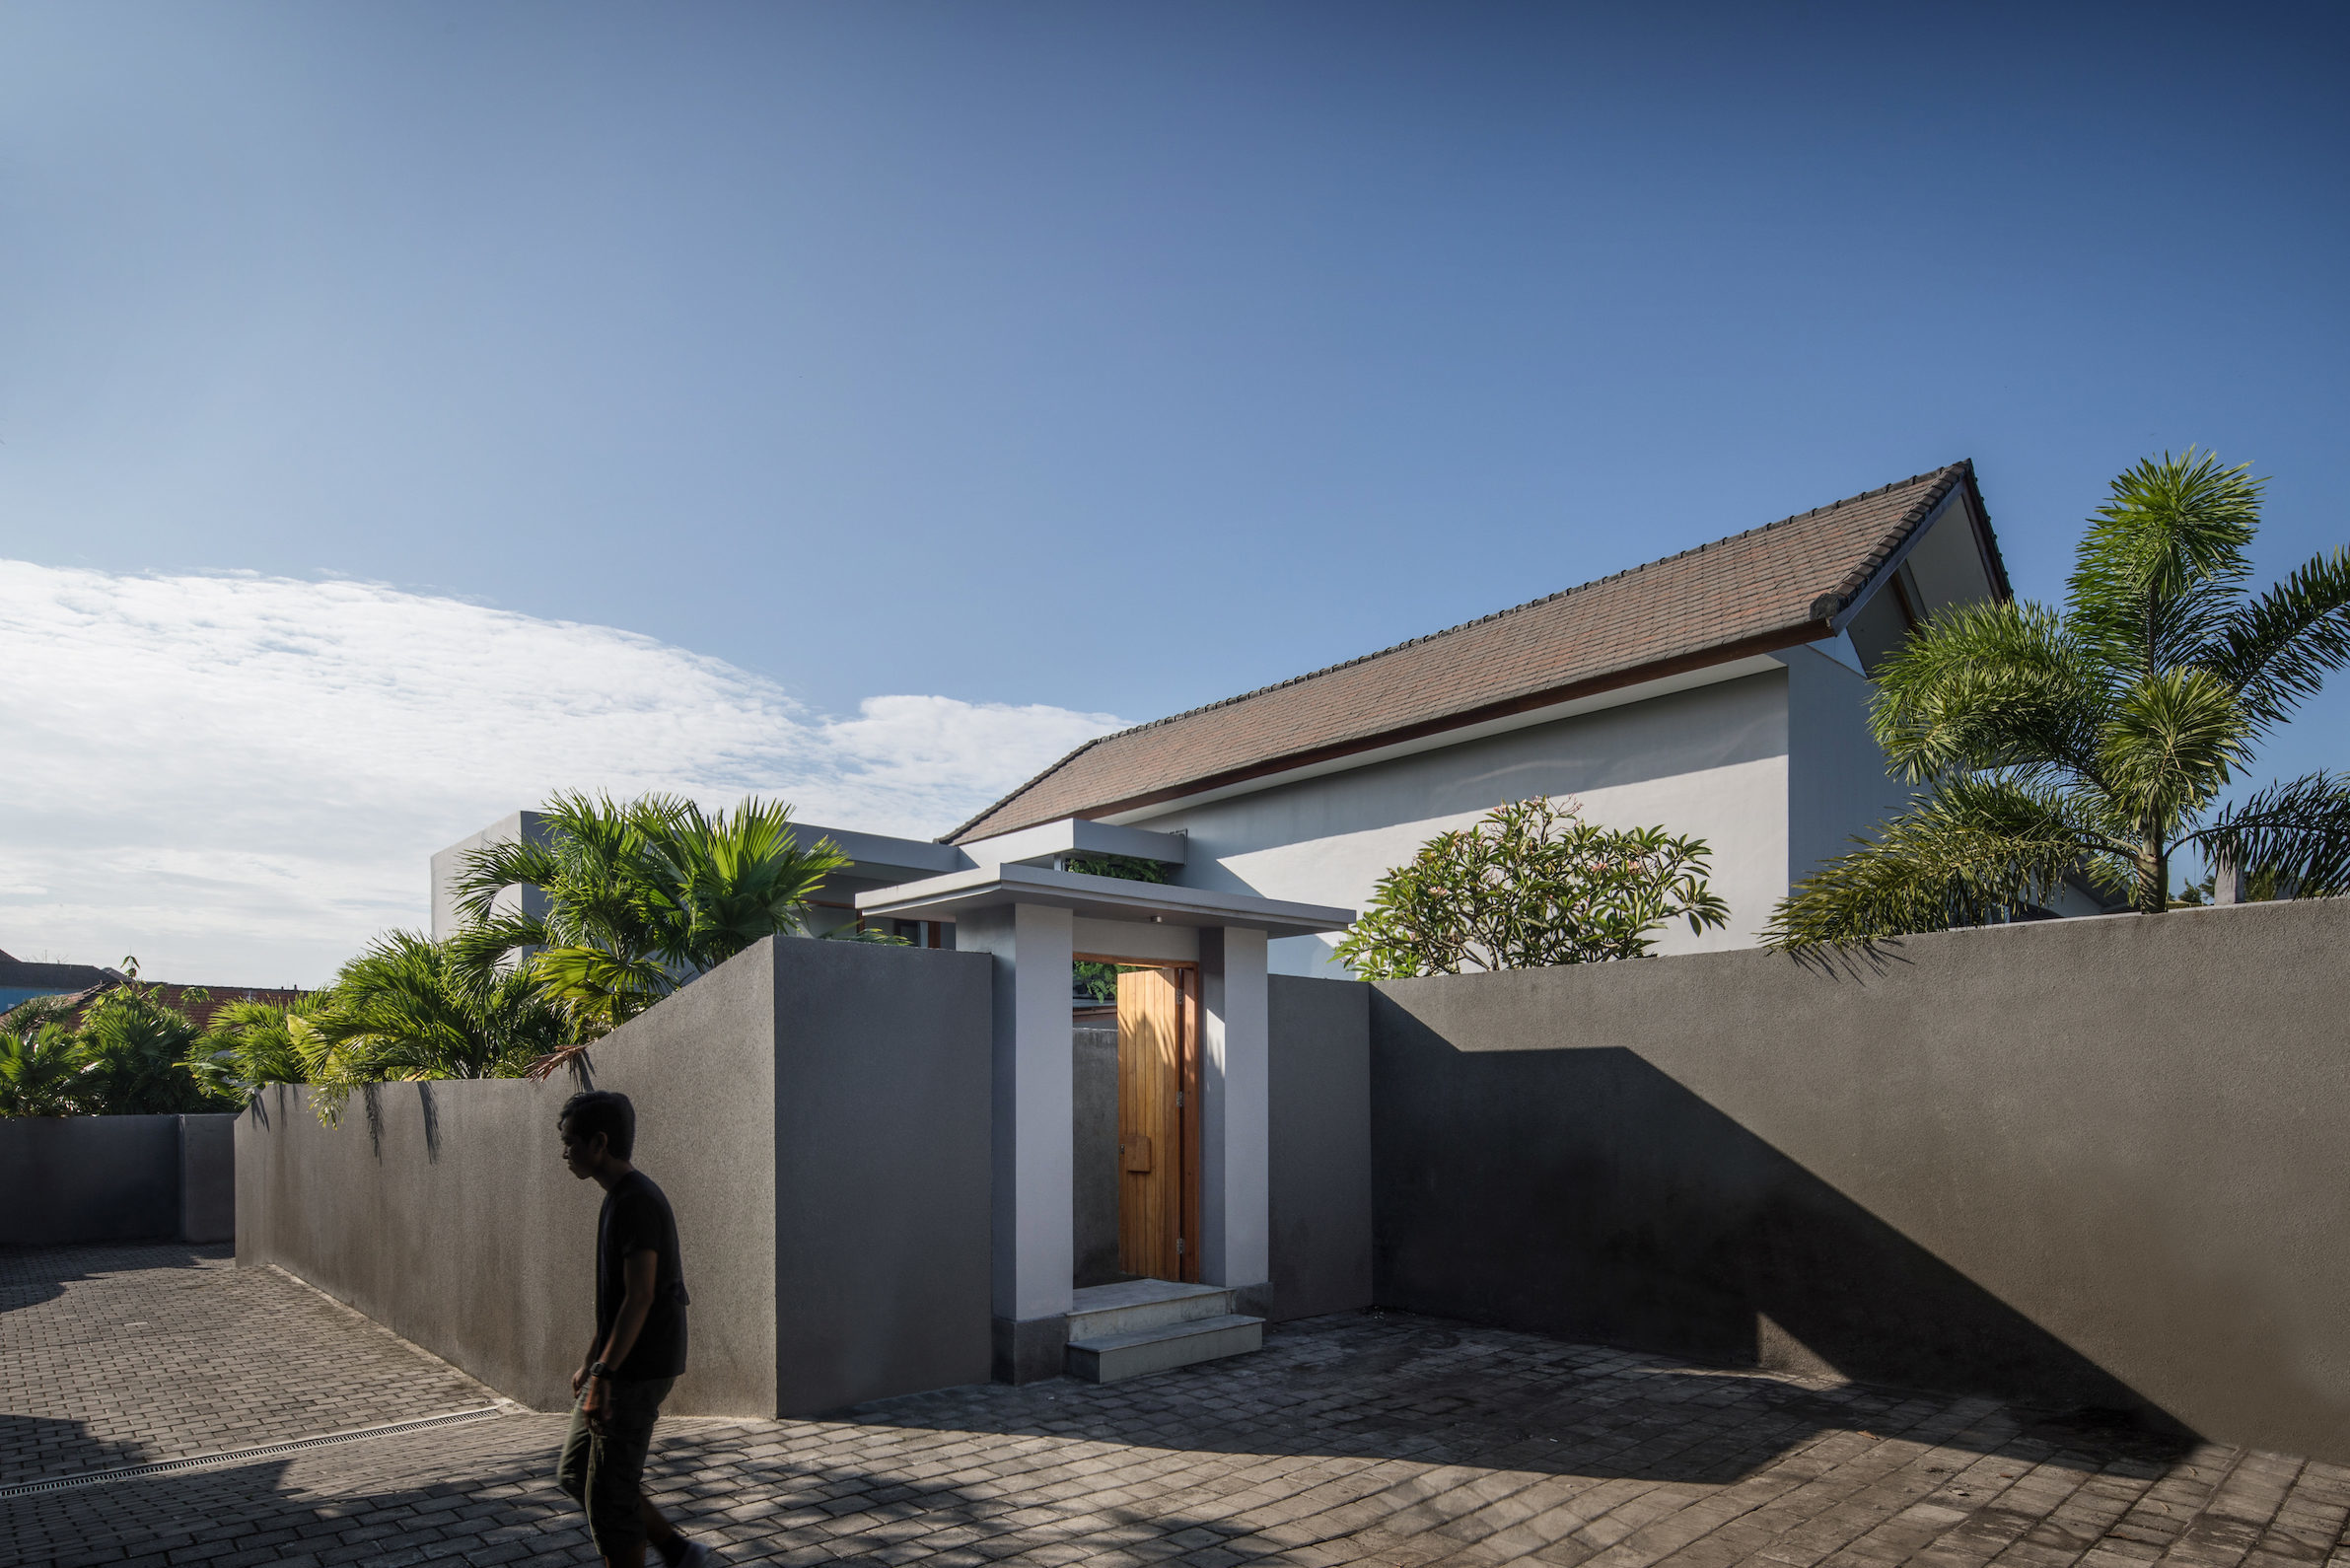 バリ島におけるサステナブル建築。環境に配慮した建築手法の重要性